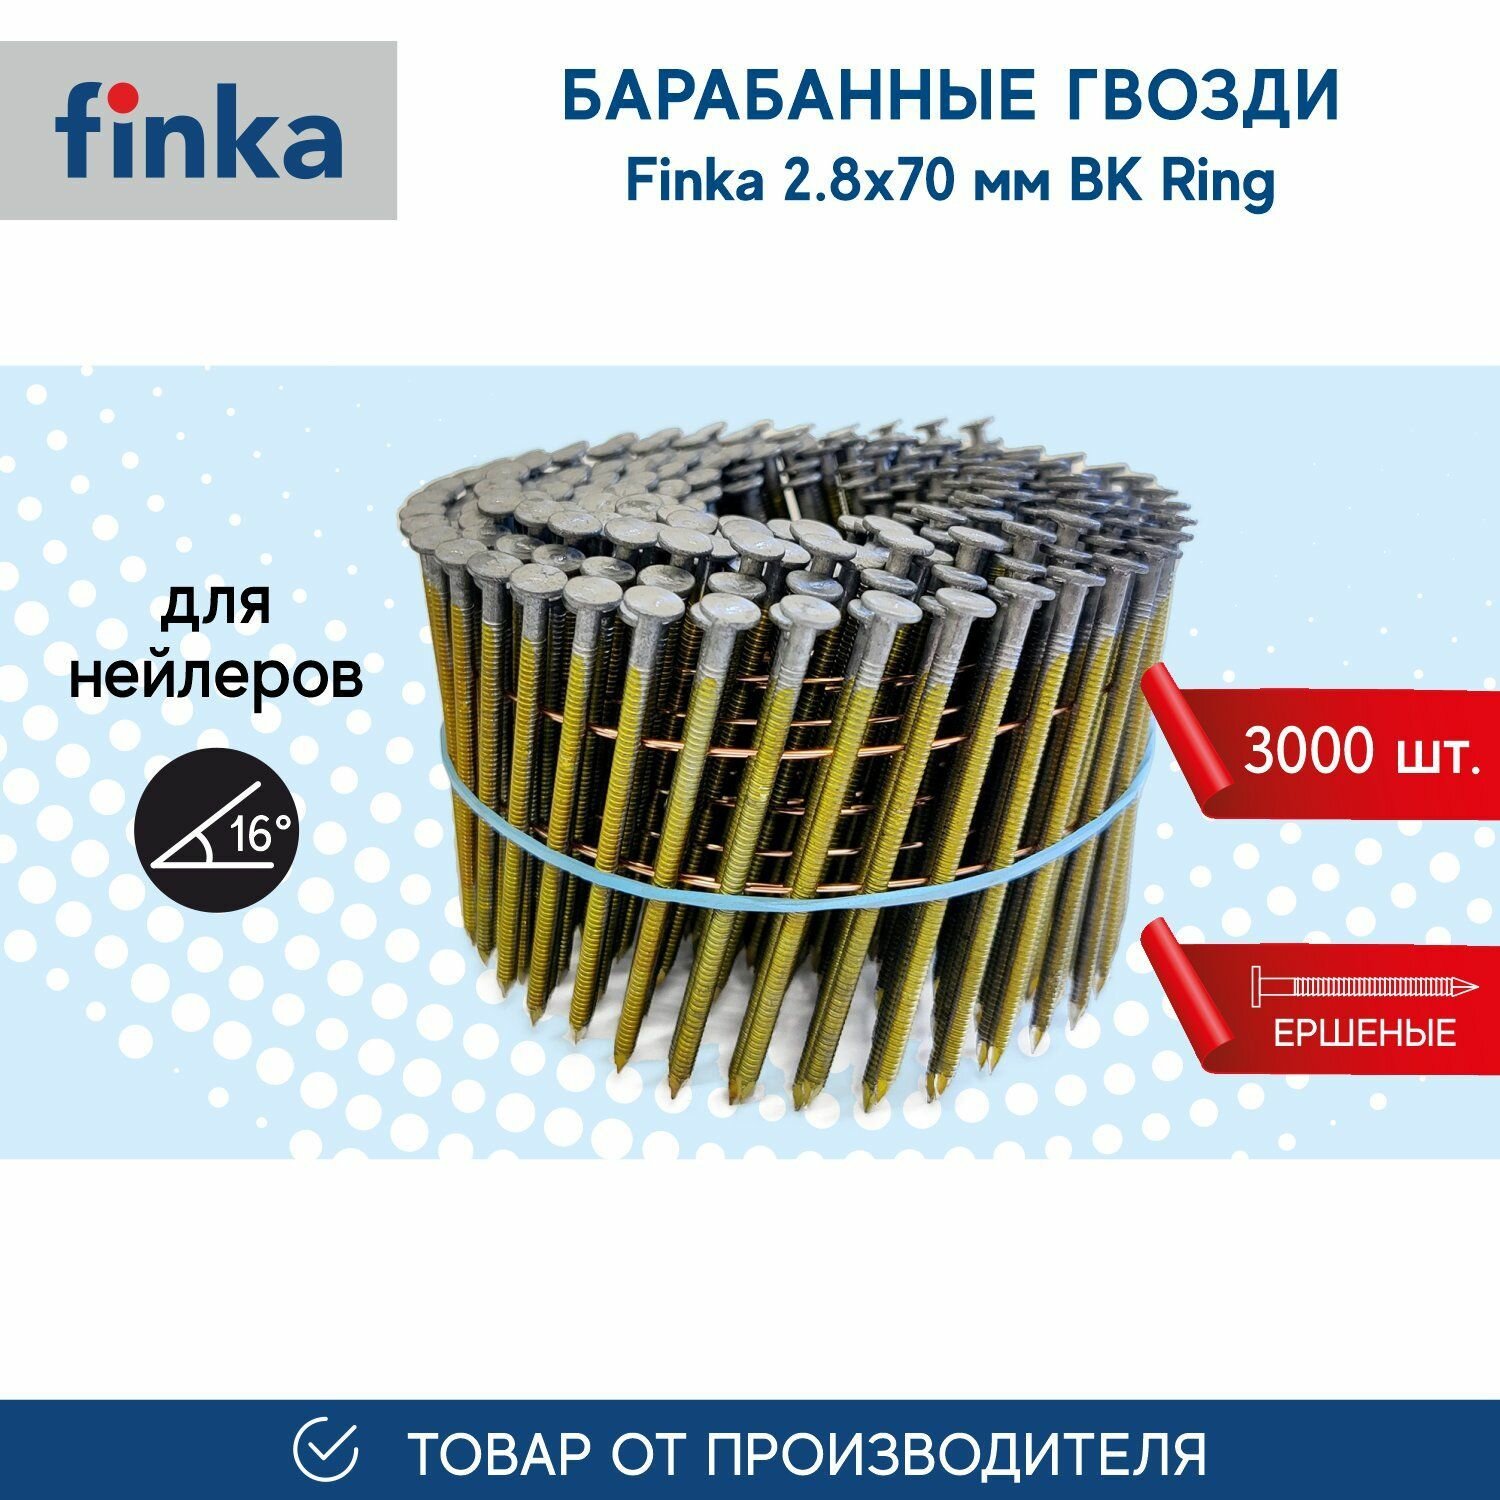 Барабанные гвозди FINKA 2.8х70 BK Ring (3000 шт.) для нейлеров и пневмоинструмента, ершеный, компактная упаковка